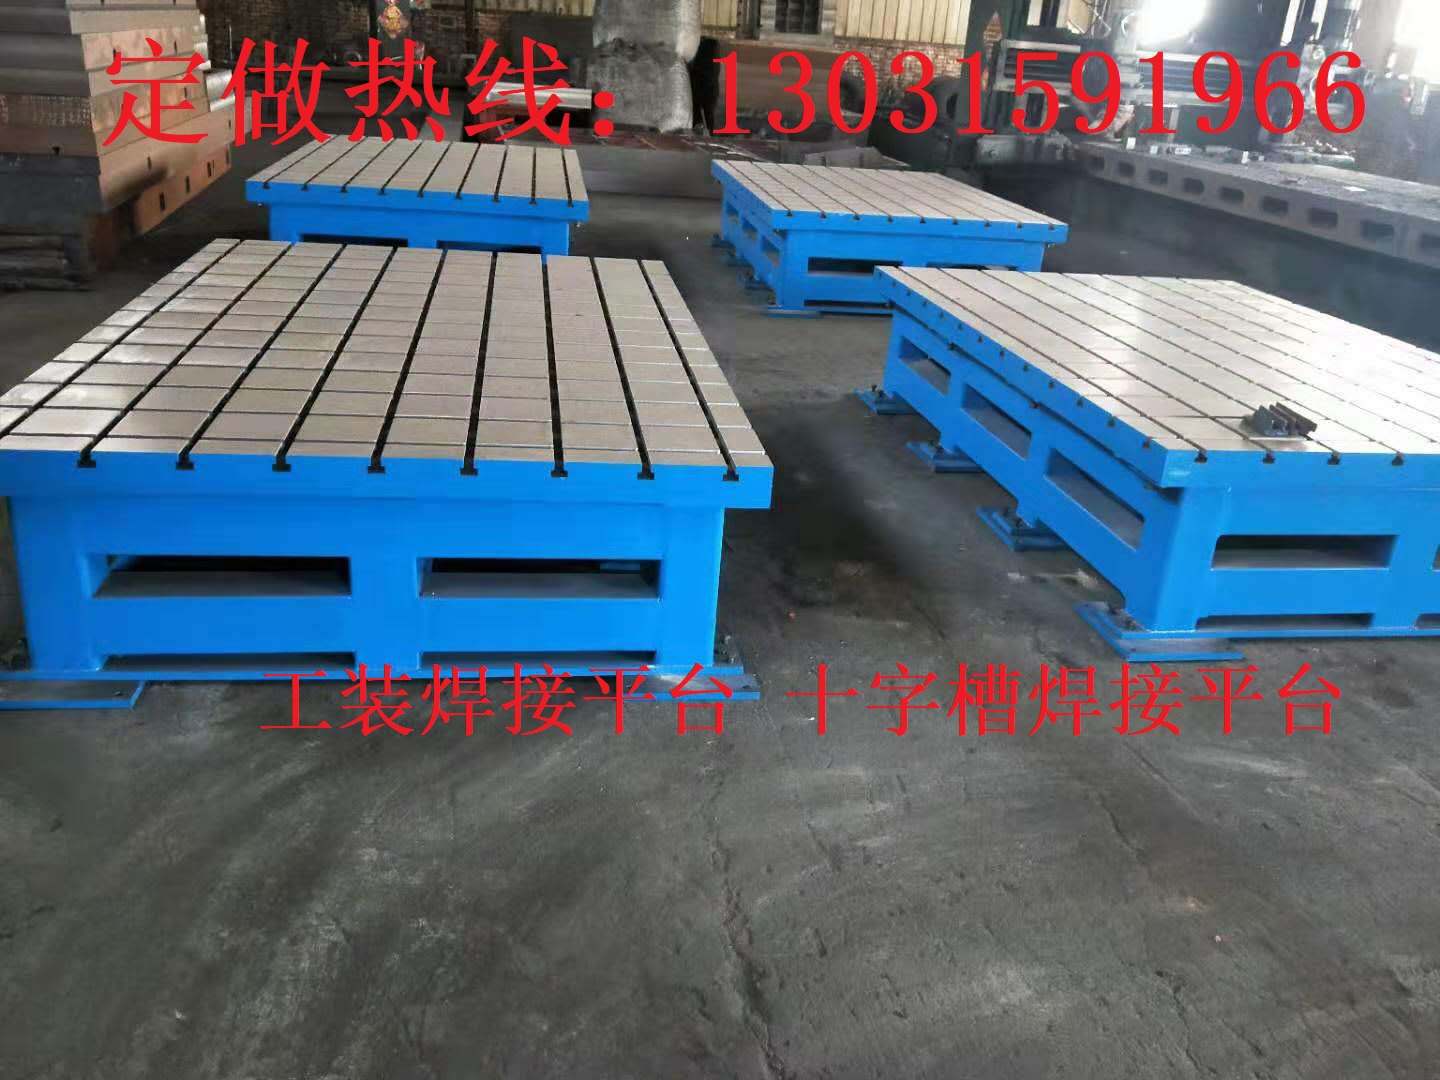 内蒙古风电试验平台电机测试铁地板2*4米铸铁平台泊头定做厂家